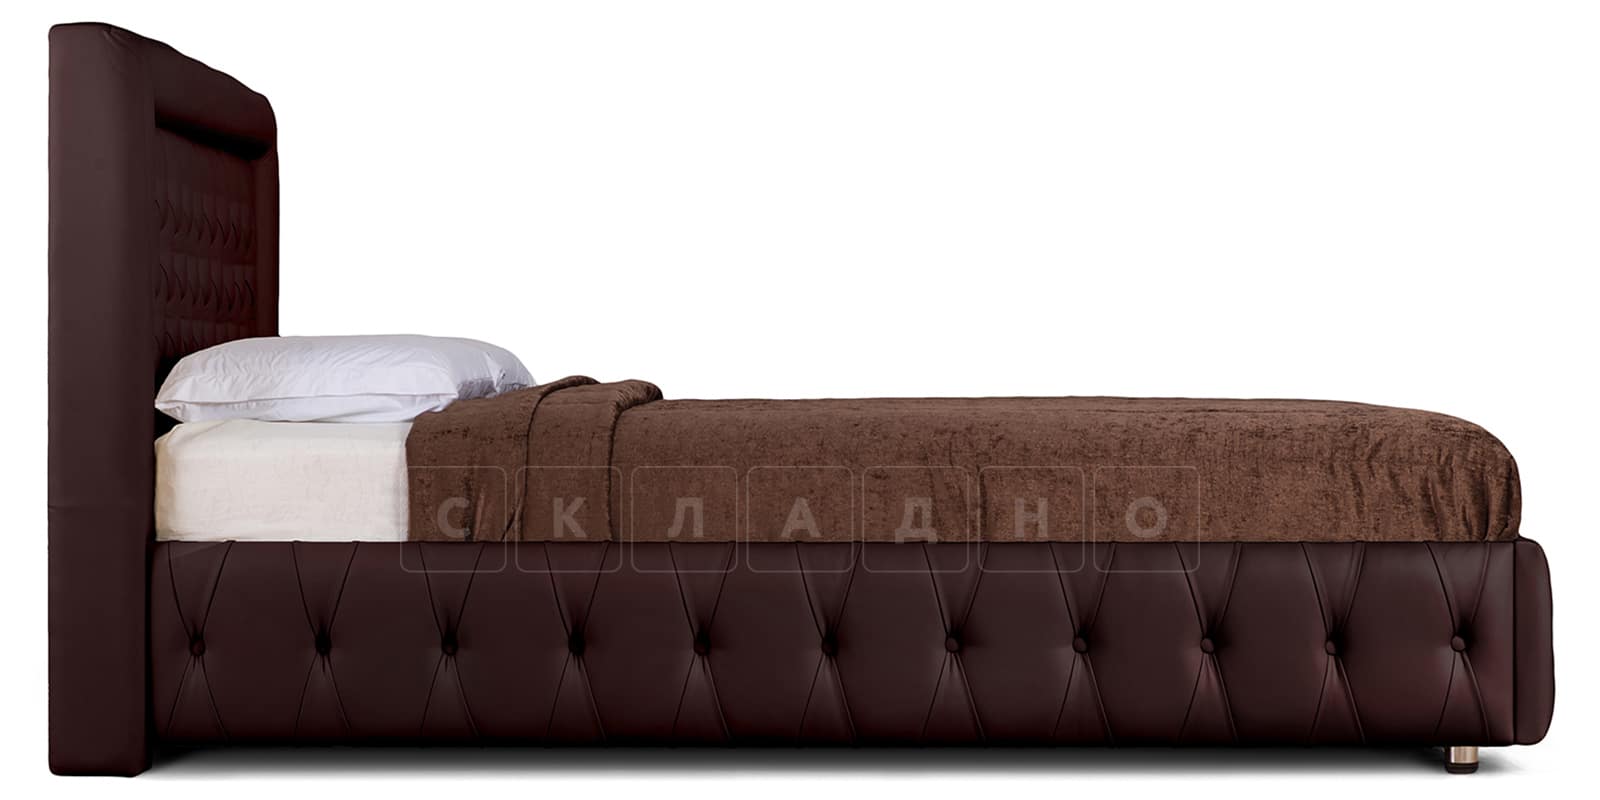 Мягкая кровать Малибу 160см экокожа шоколадного цвета вариант 7-2 фото 3 | интернет-магазин Складно